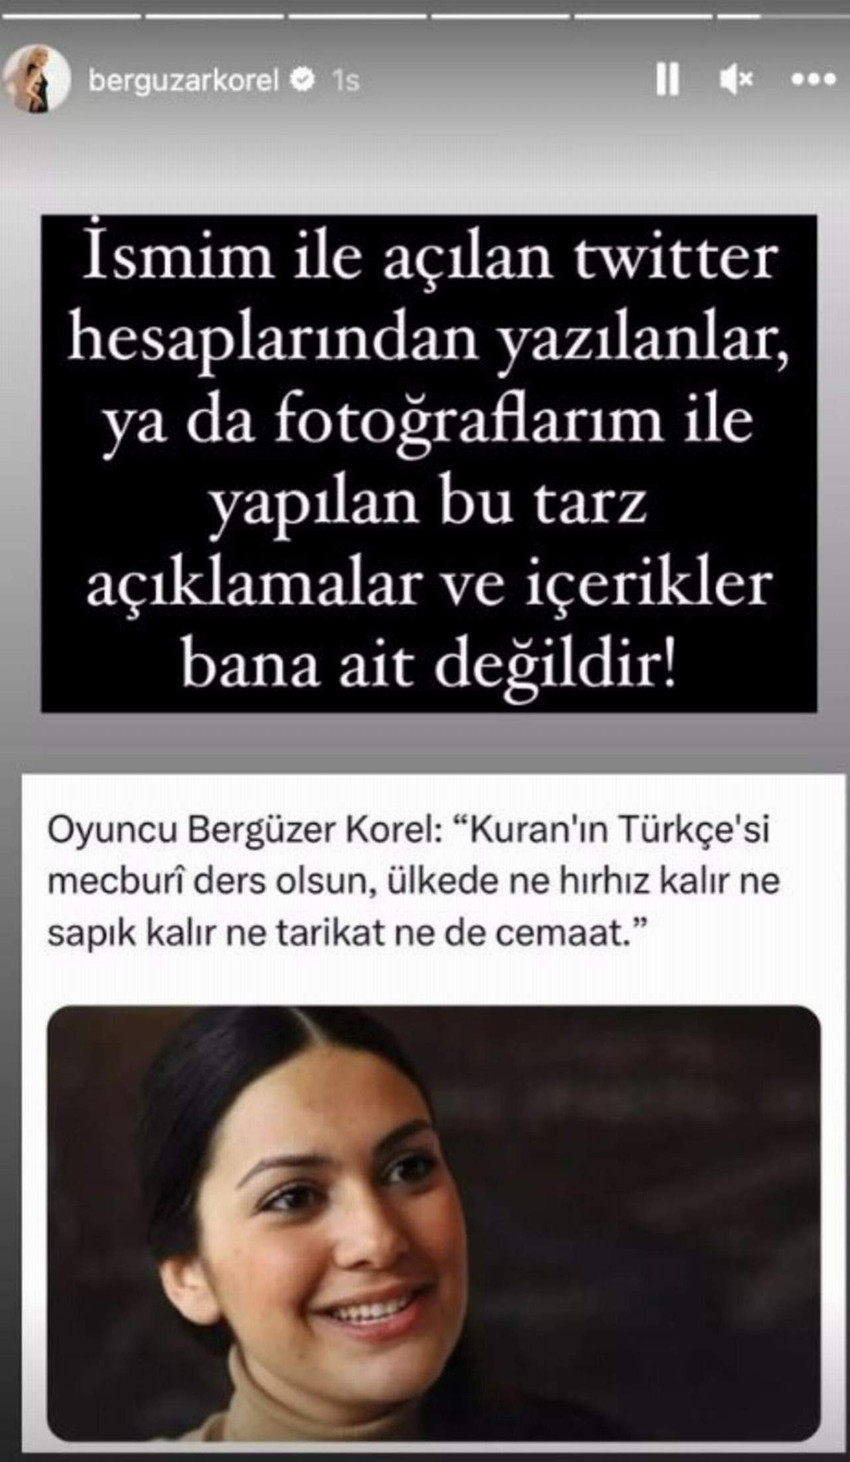 Sosyal medyada dolaşıma giren ve güzel oyuncu Bergüzar Korel'in "Kur'an'ın Türkçesi ders olsun" dediğine dair paylaşım sonrası güzel oyuncudan açıklama geldi.